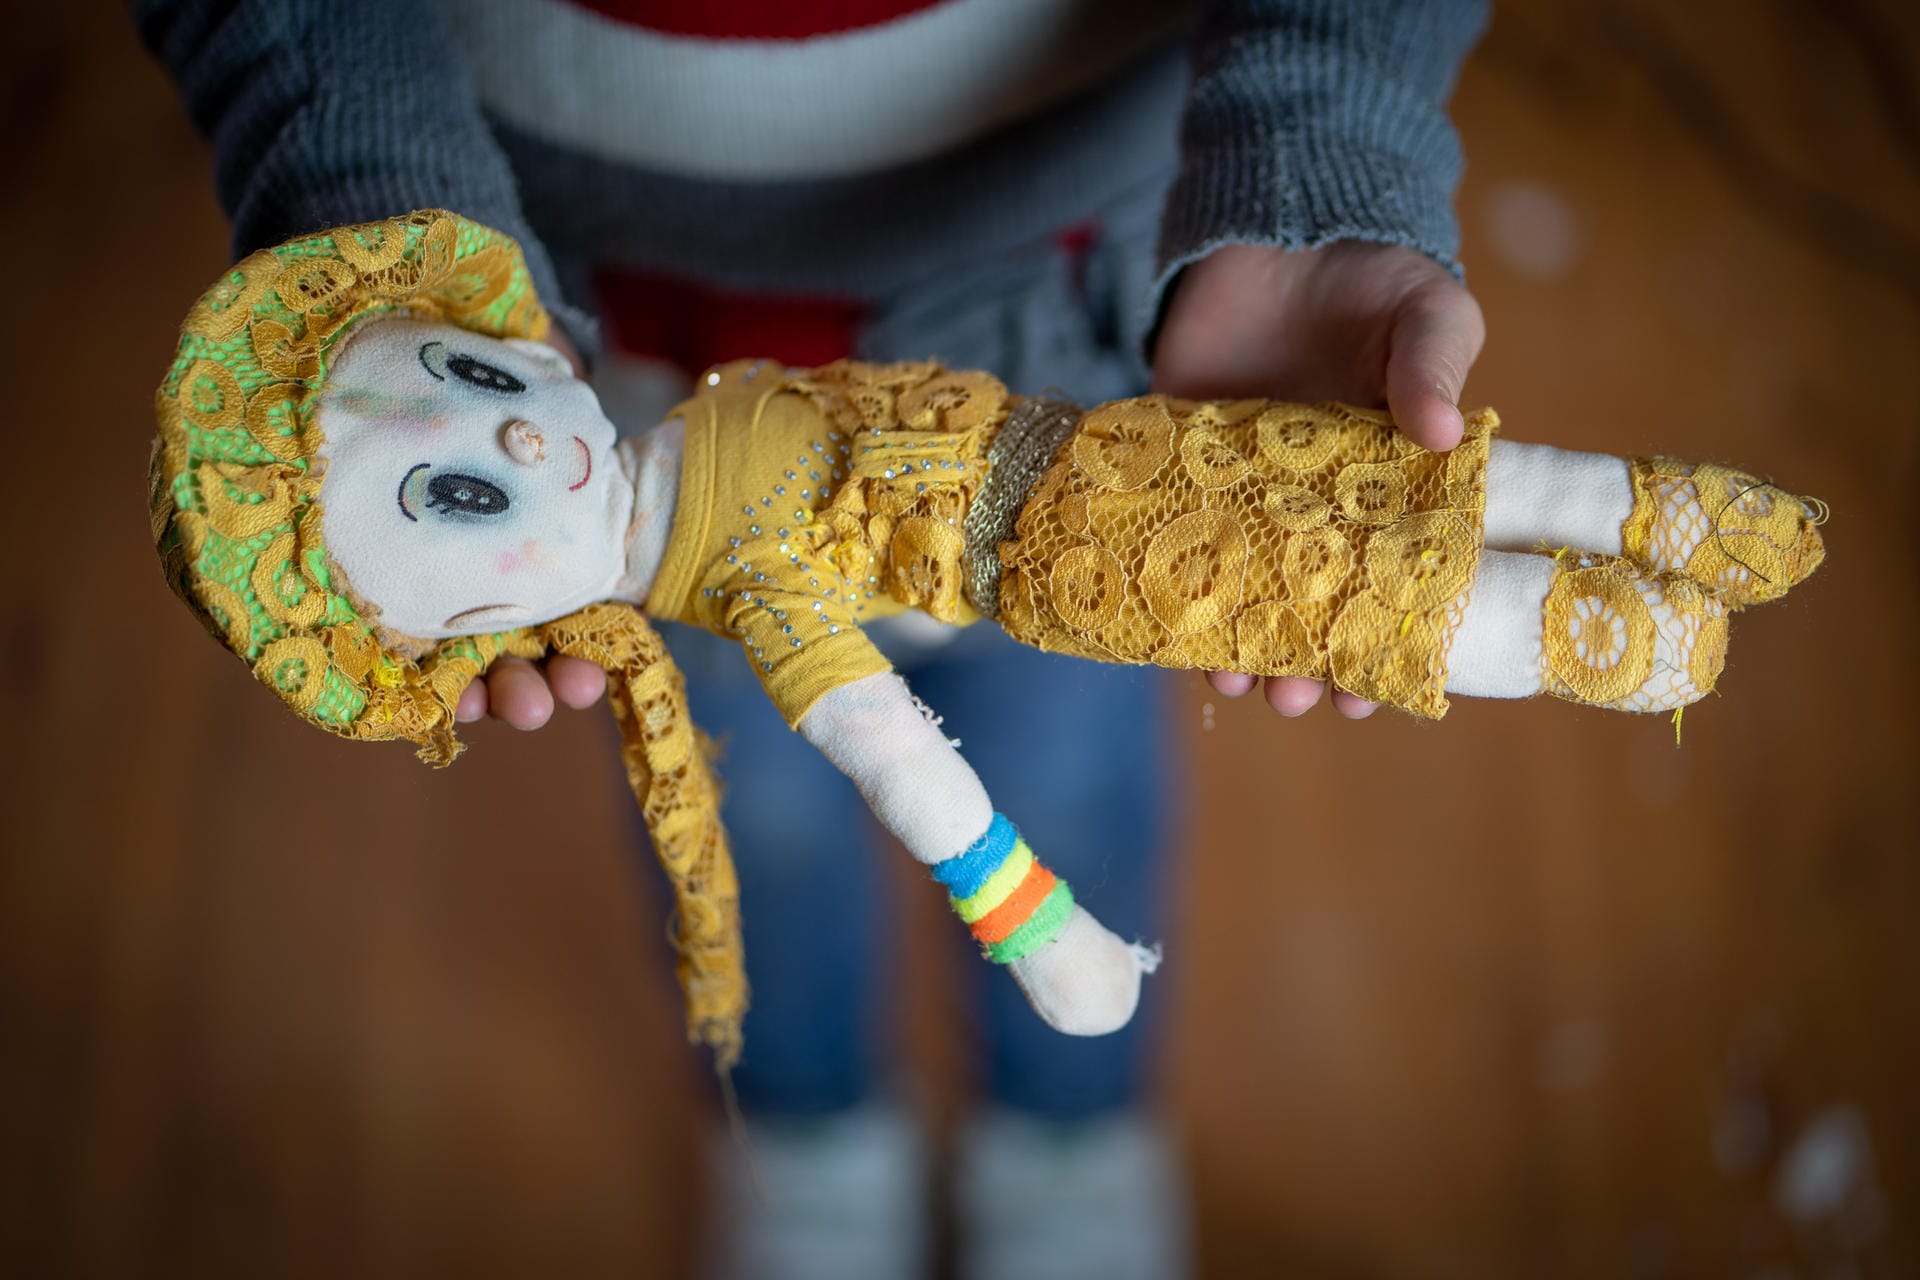 Die dreizehnjährige Iman brachte aus Syrien ihre Puppe "Lulu" mit: "Meine Mama hat sie mir geschenkt", sagt Iman Unicef. "Als der Krieg begann, fielen Schüsse. Ich umarmte Lulu dann und fühlte mich sicher."